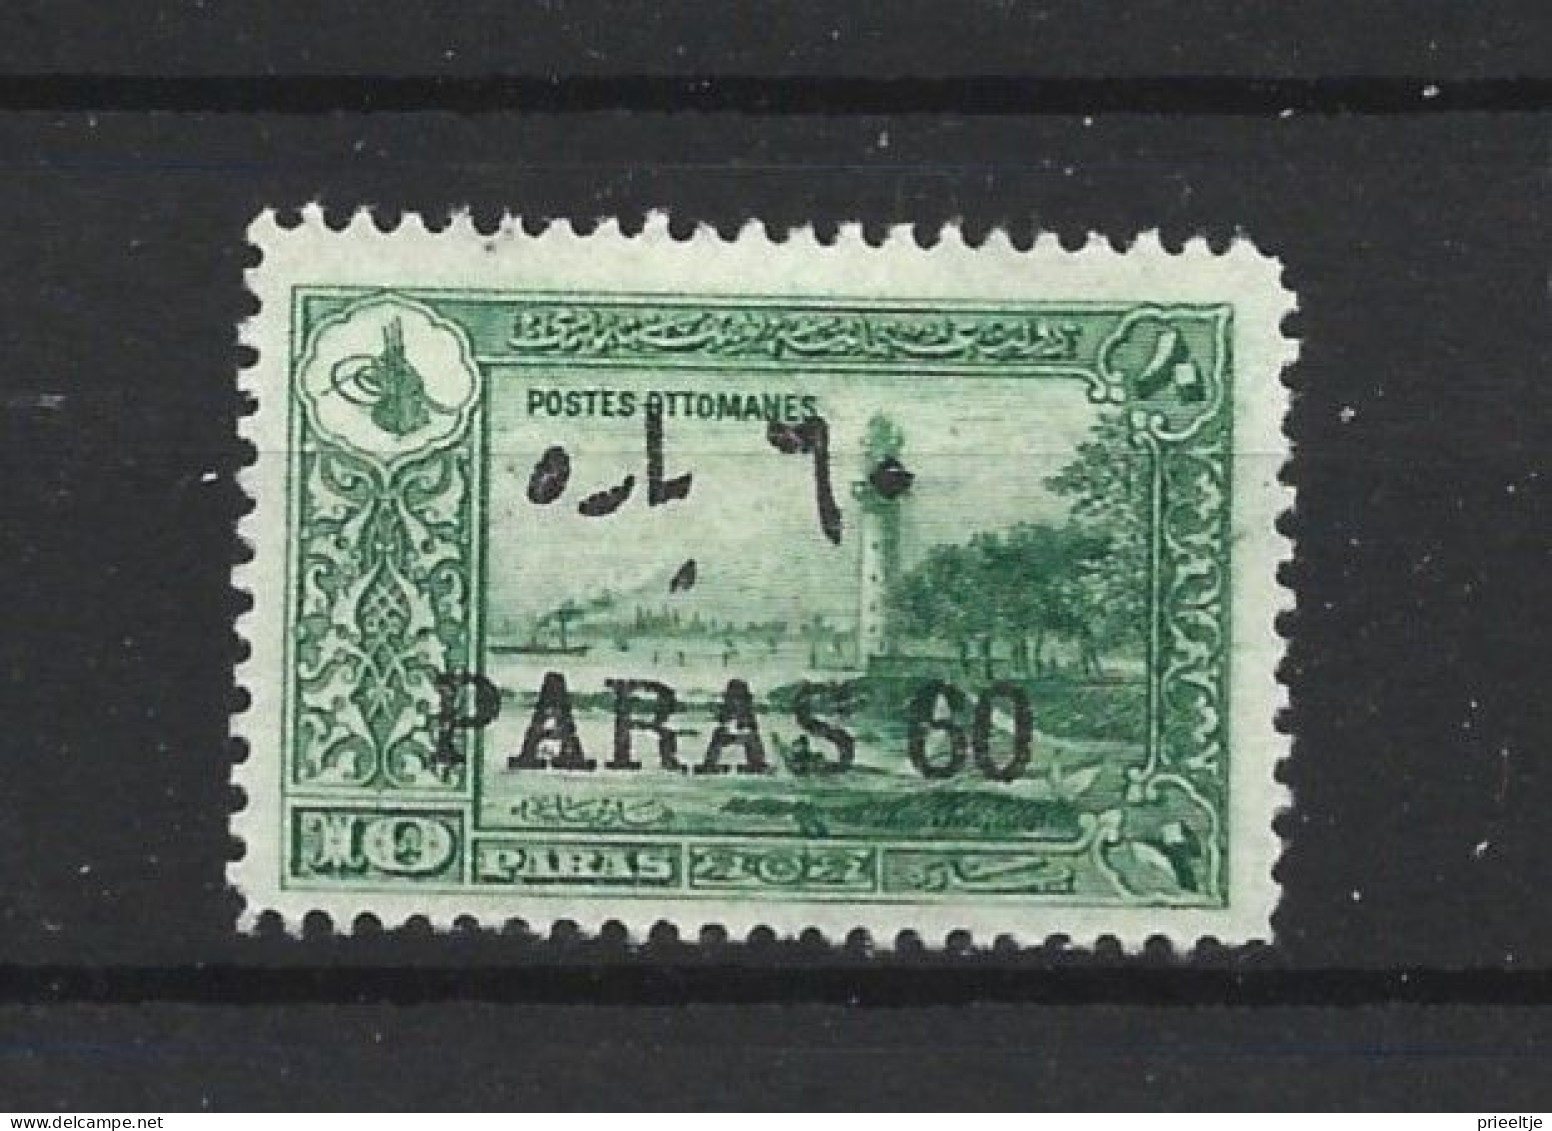 Turkey 1921 Overprint Y.T. 627  * - Nuevos